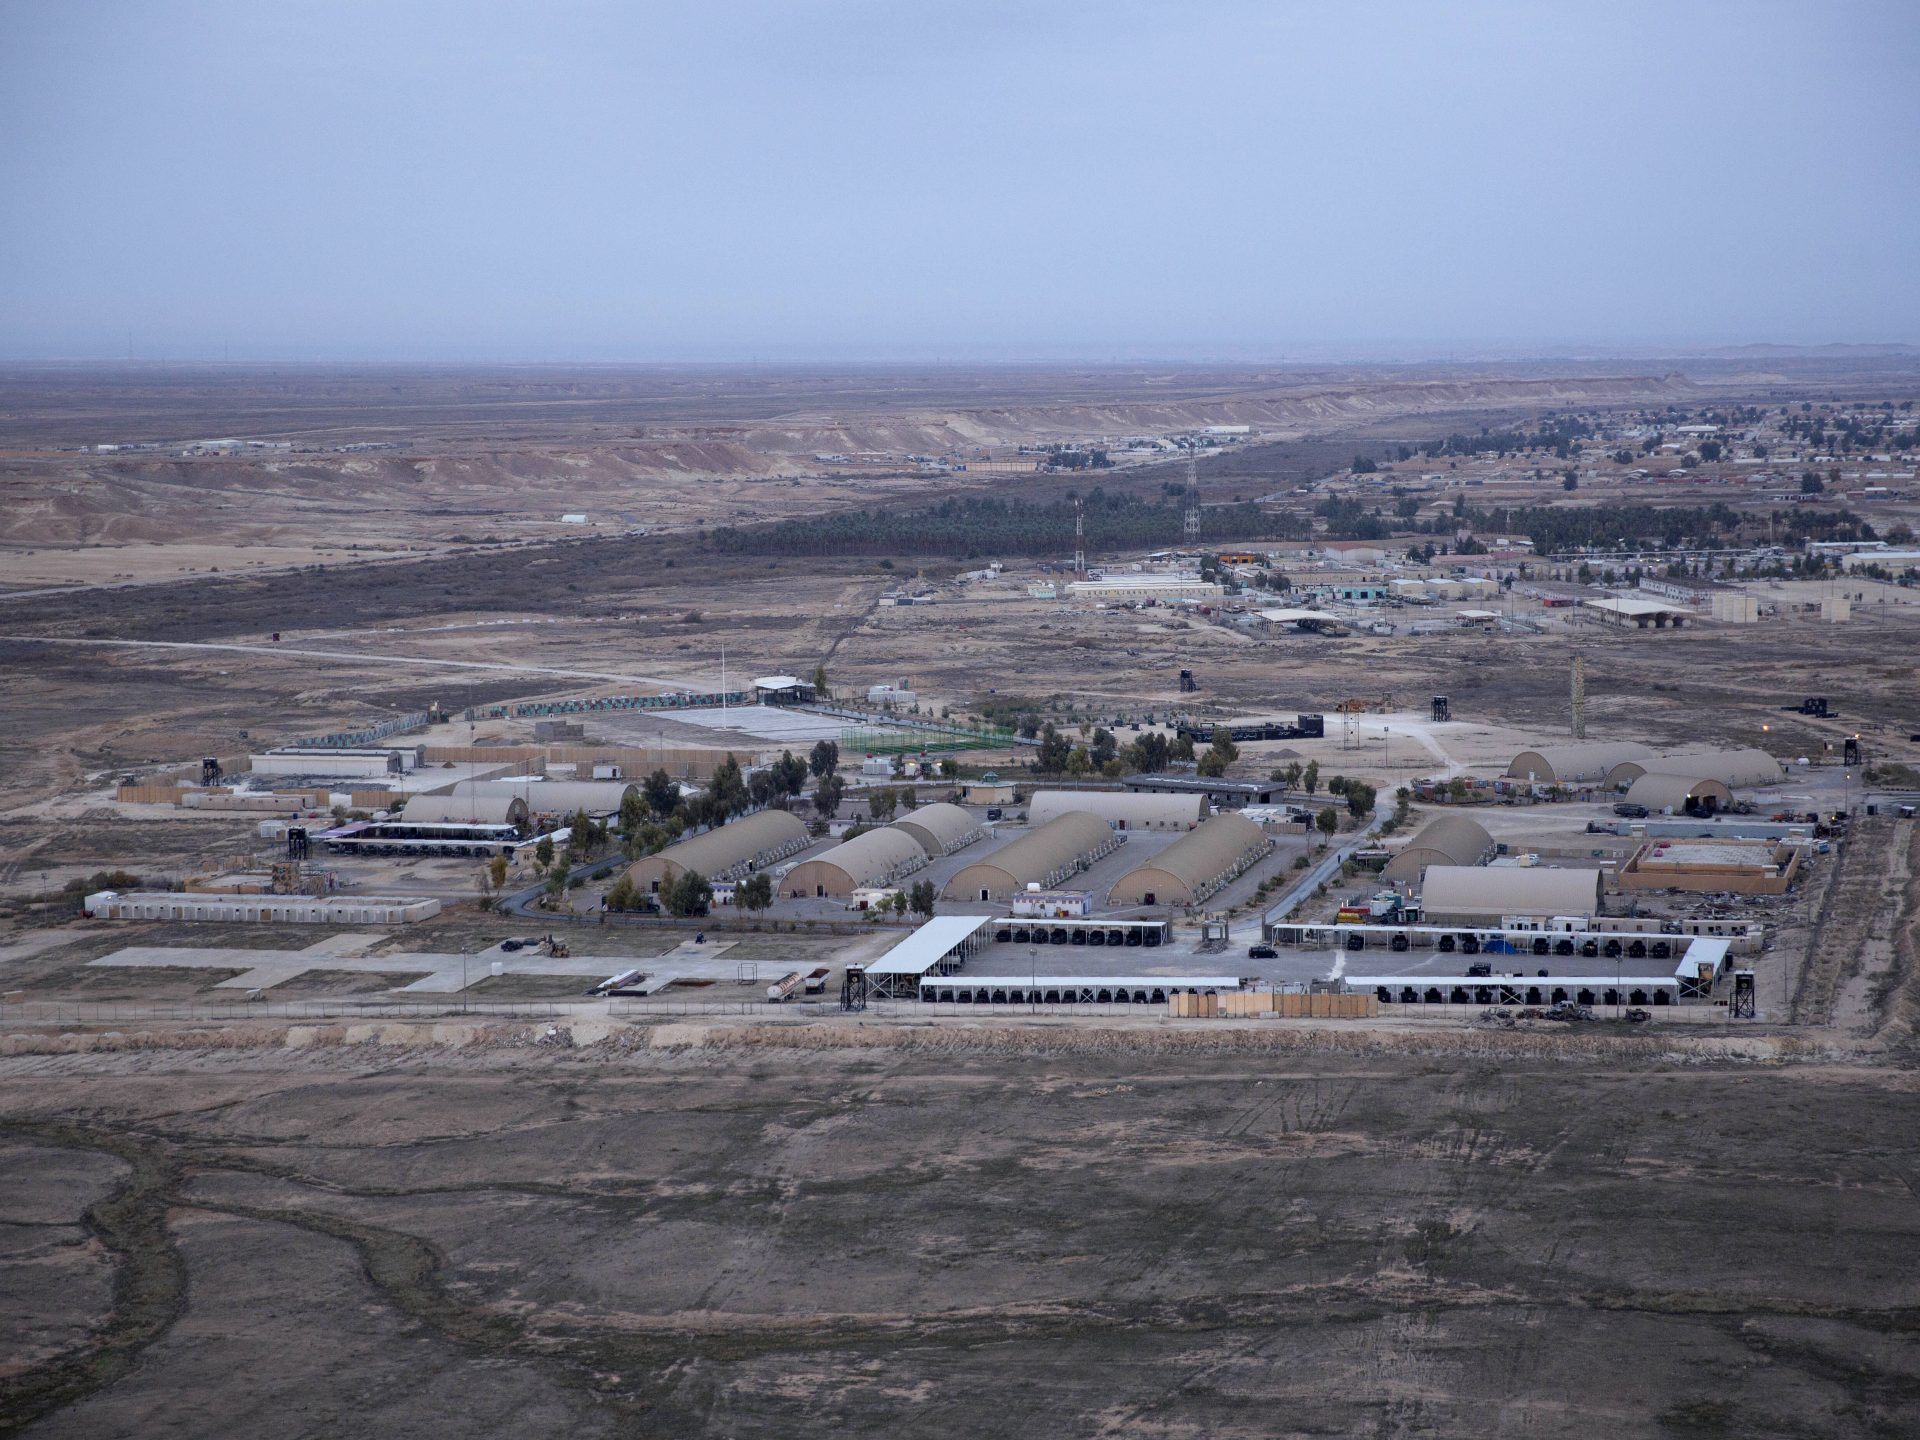 This aerial photo shows Ain al-Assad air base in the western Anbar desert, Iraq, in December 2019.